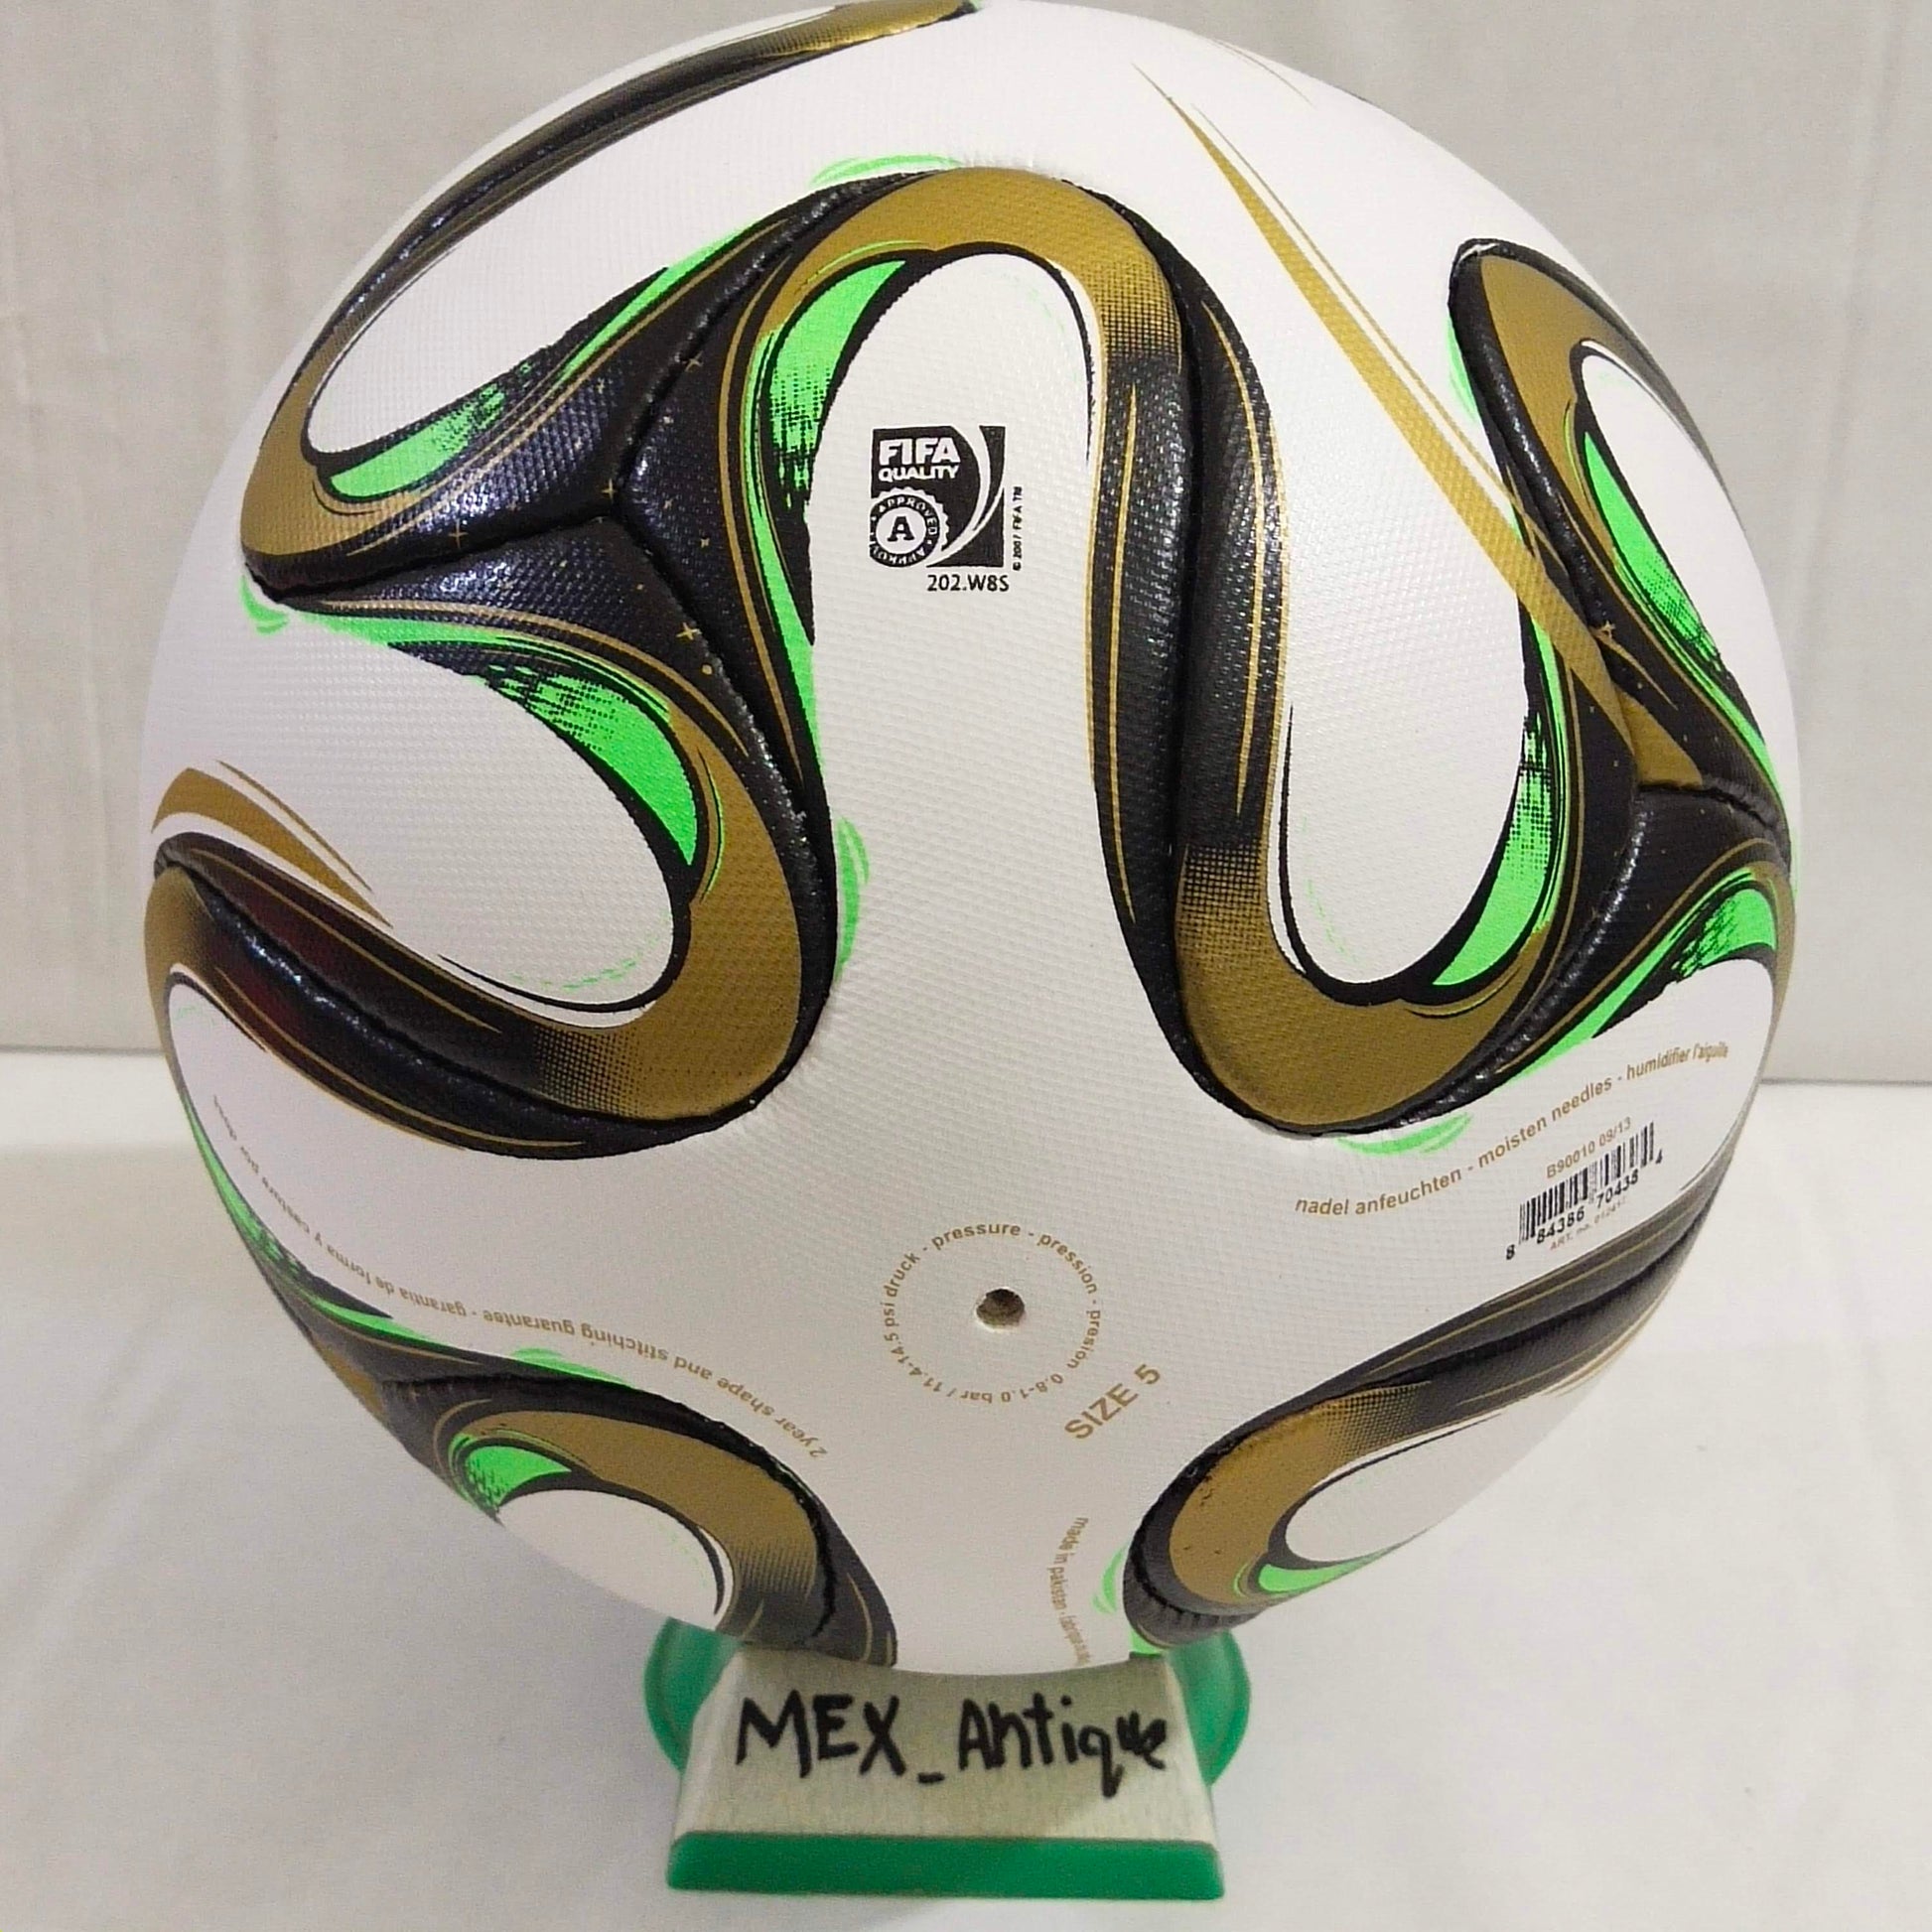 Adidas Brazuca Rio | Final Ball | 2014 | FIFA World Cup Ball | SIZE 5 05